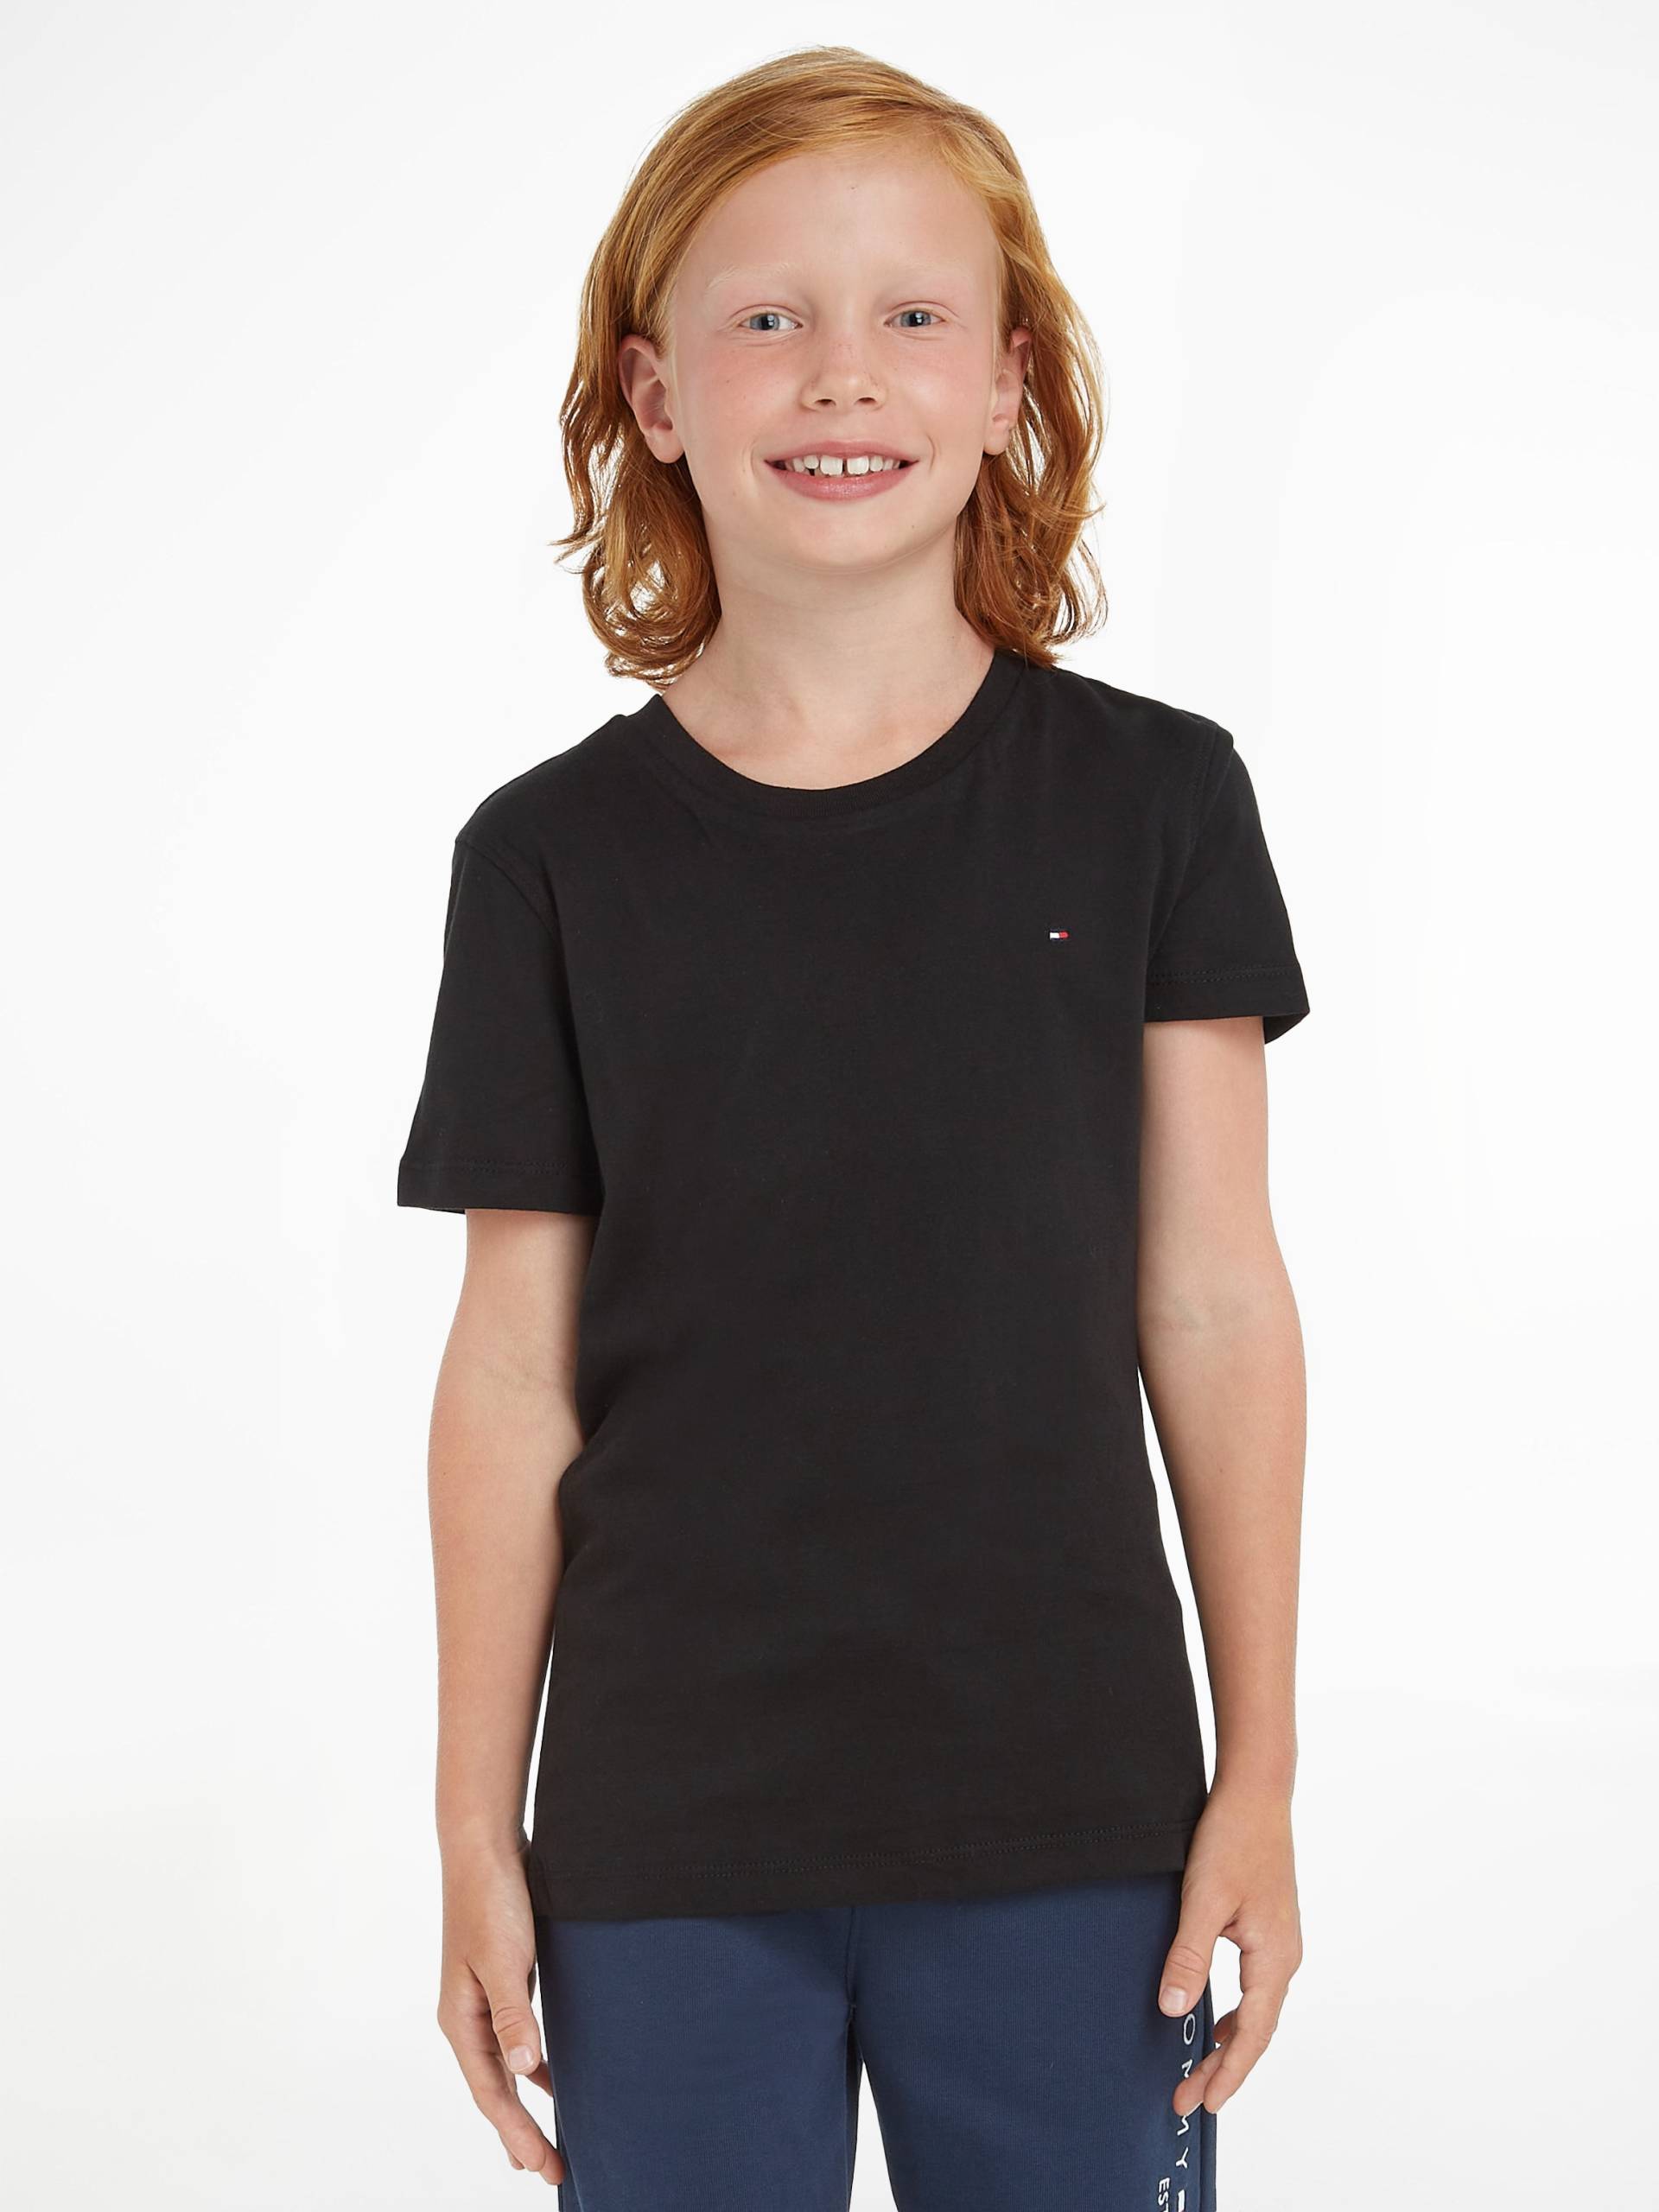 Tommy Hilfiger T-Shirt »BOYS BASIC CN KNIT«, Kinder Kids Junior MiniMe,für Jungen von Tommy Hilfiger